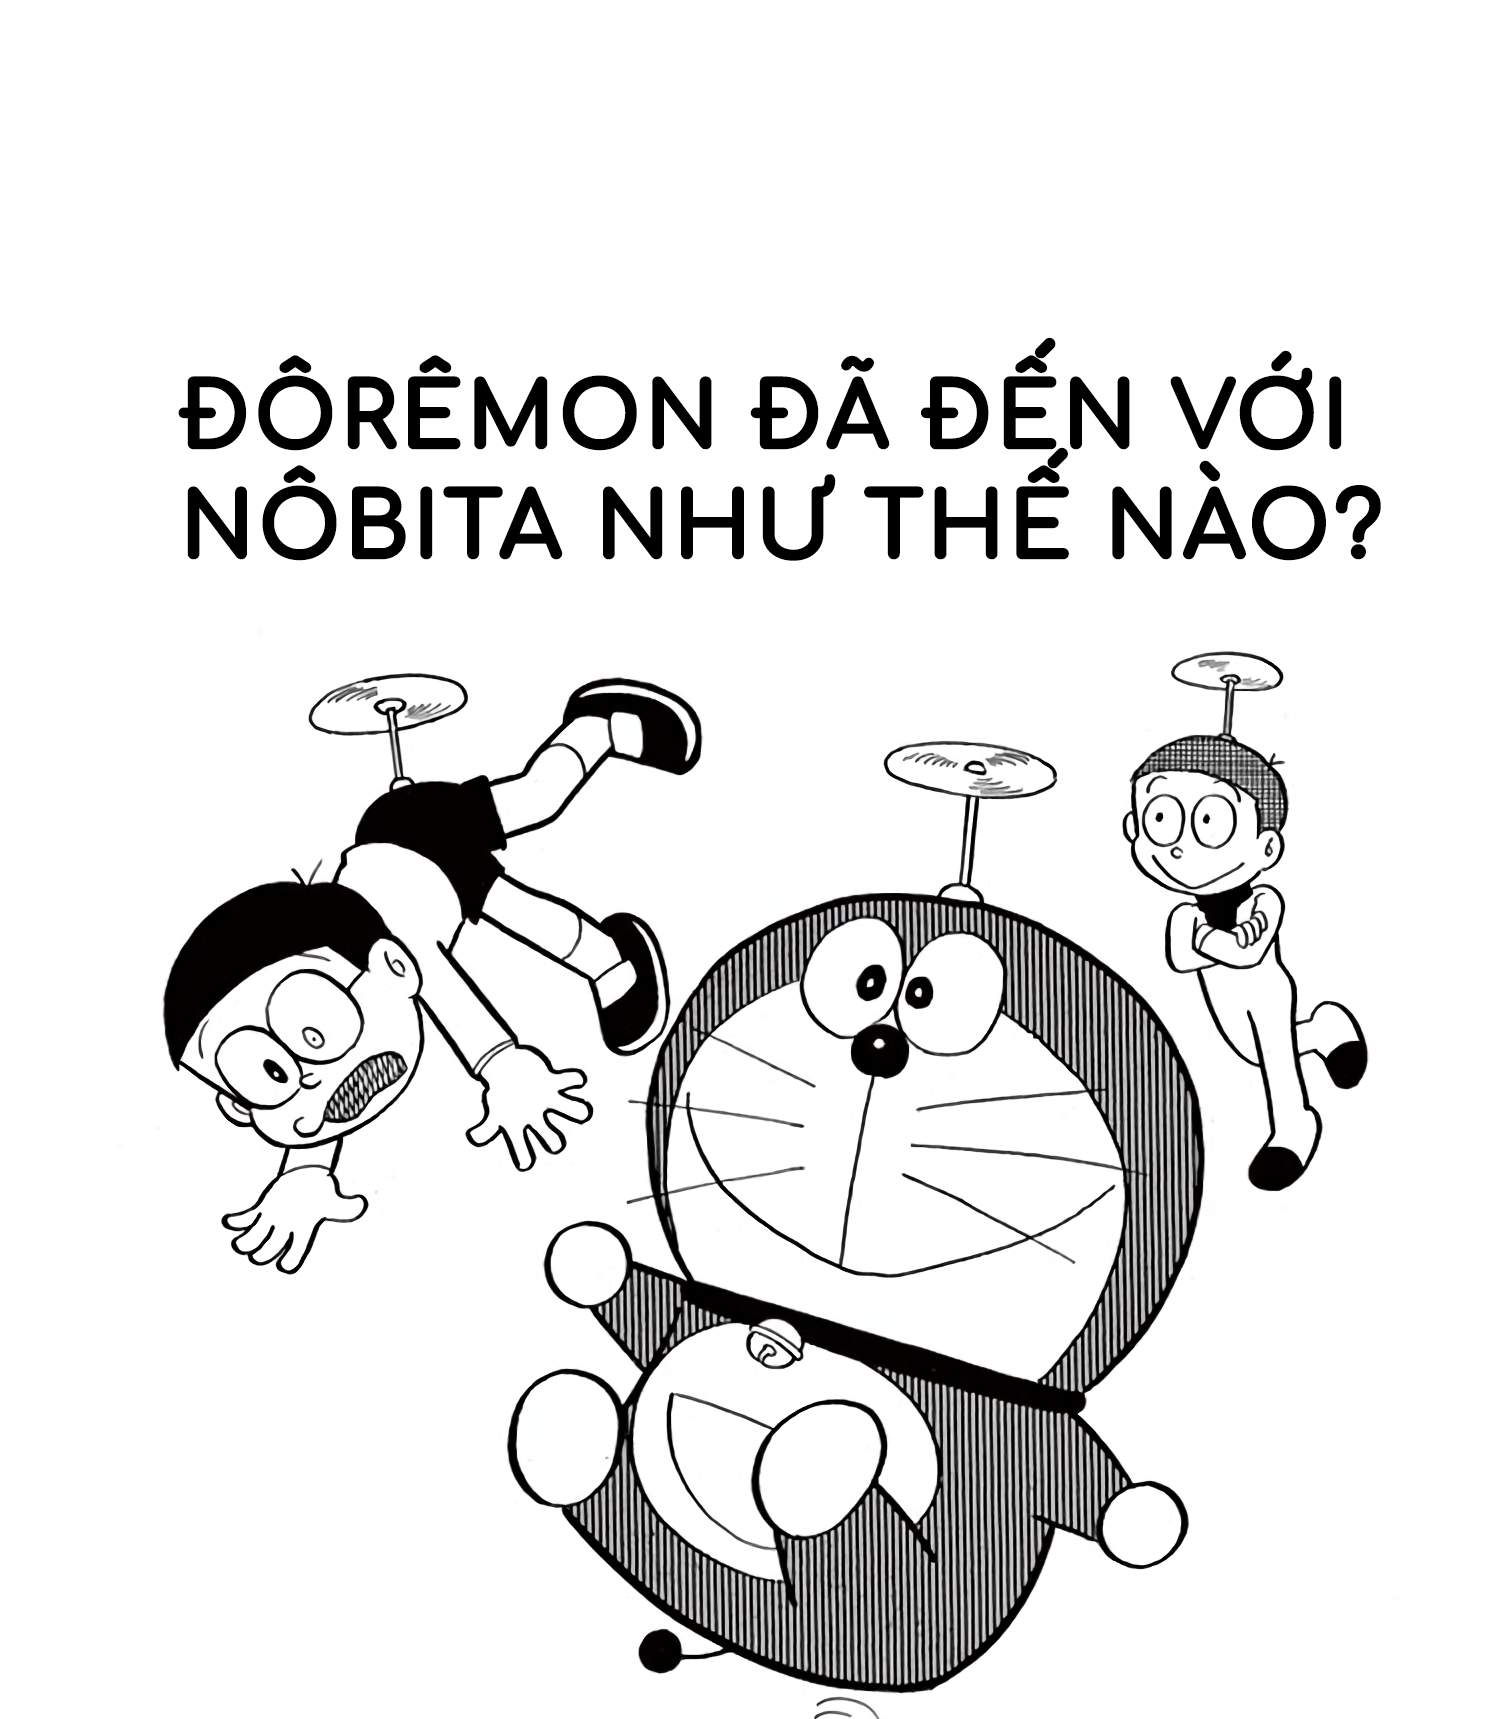 Doraemon: Hãy cùng thưởng thức hình ảnh liên quan đến một trong những nhân vật được yêu thích nhất trong giới trẻ hiện nay - Doraemon! Đây là cơ hội để bạn khám phá thế giới kỳ diệu của Doraemon, với những công cụ thần kỳ và những chuyến phiêu lưu đầy thú vị.